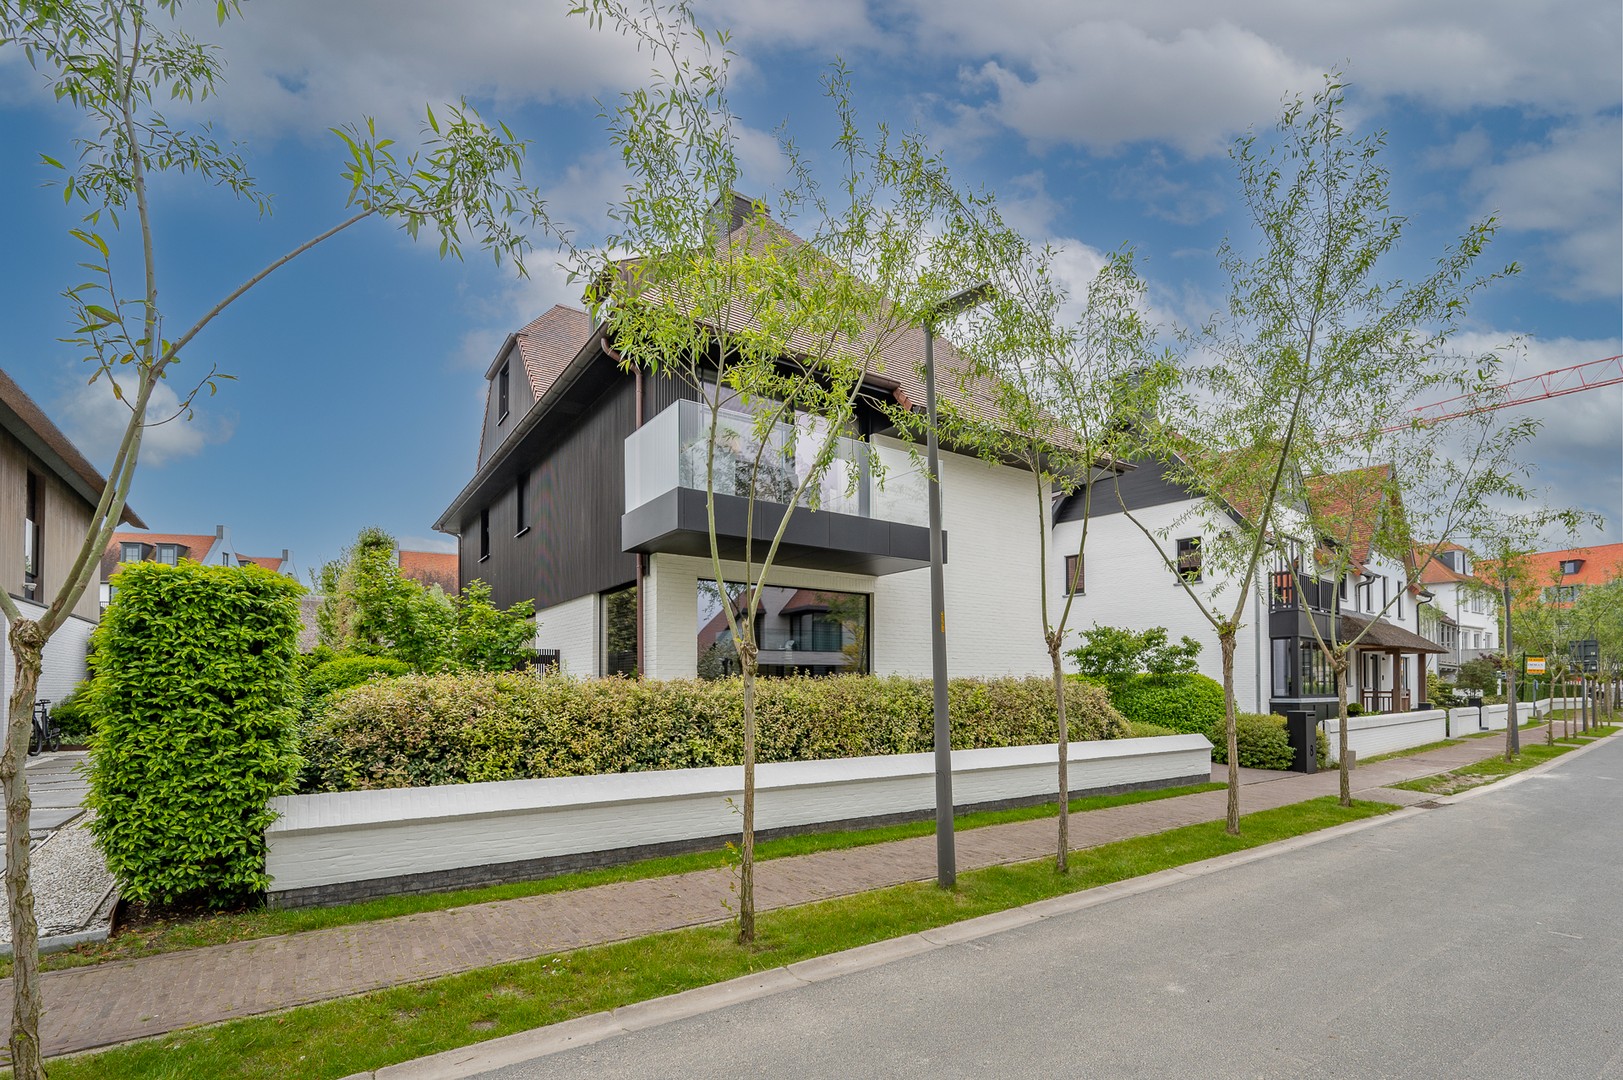 Te koop Knokke Real Estate - schitterende villa